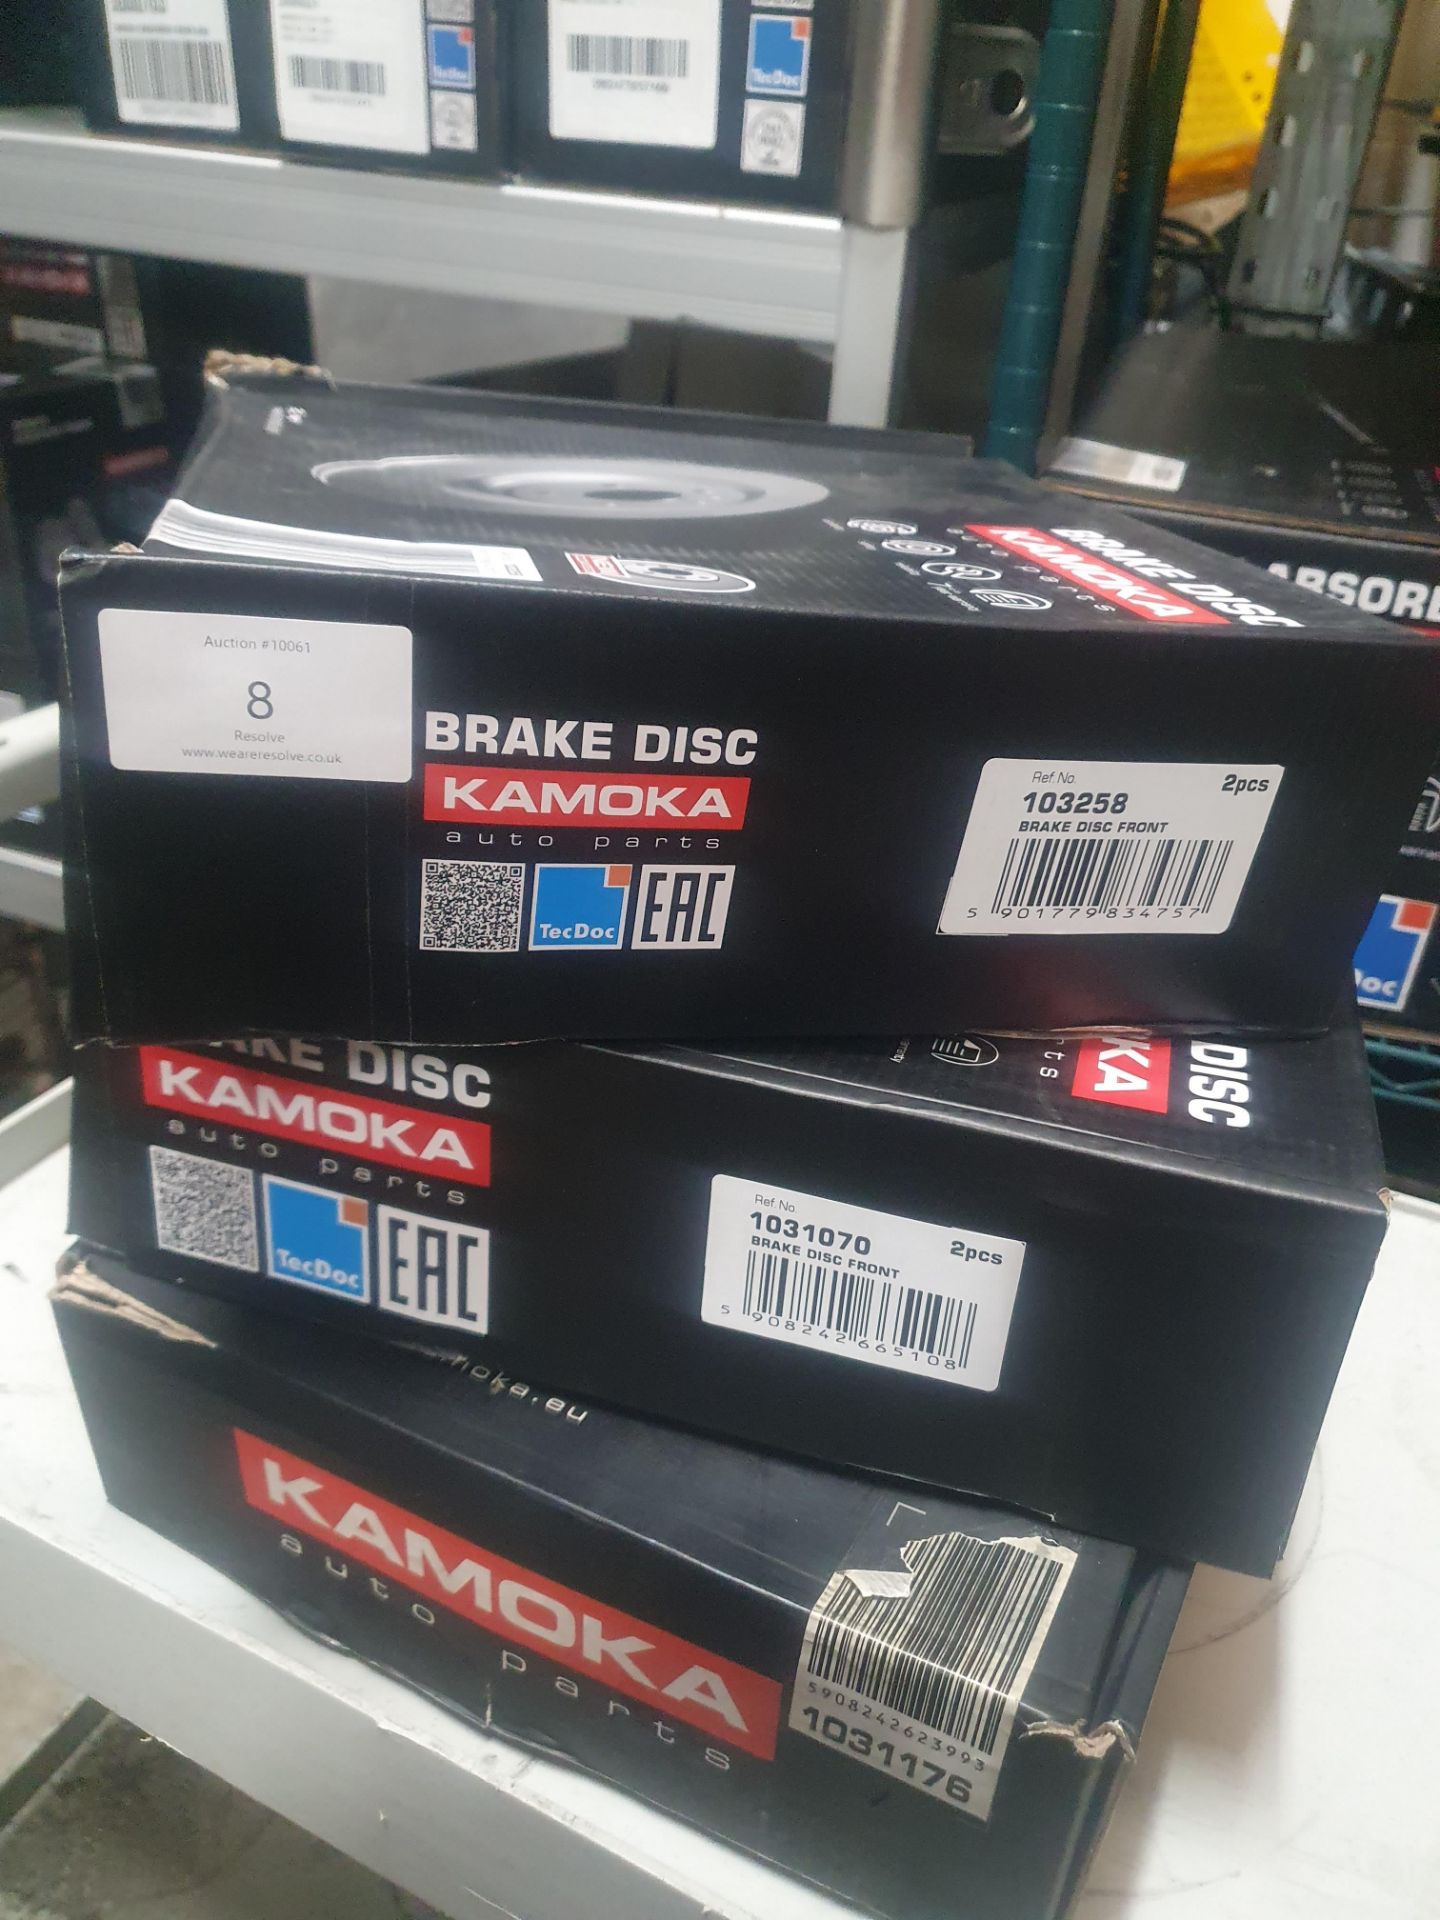 3 x Kamoka brake disc assorted